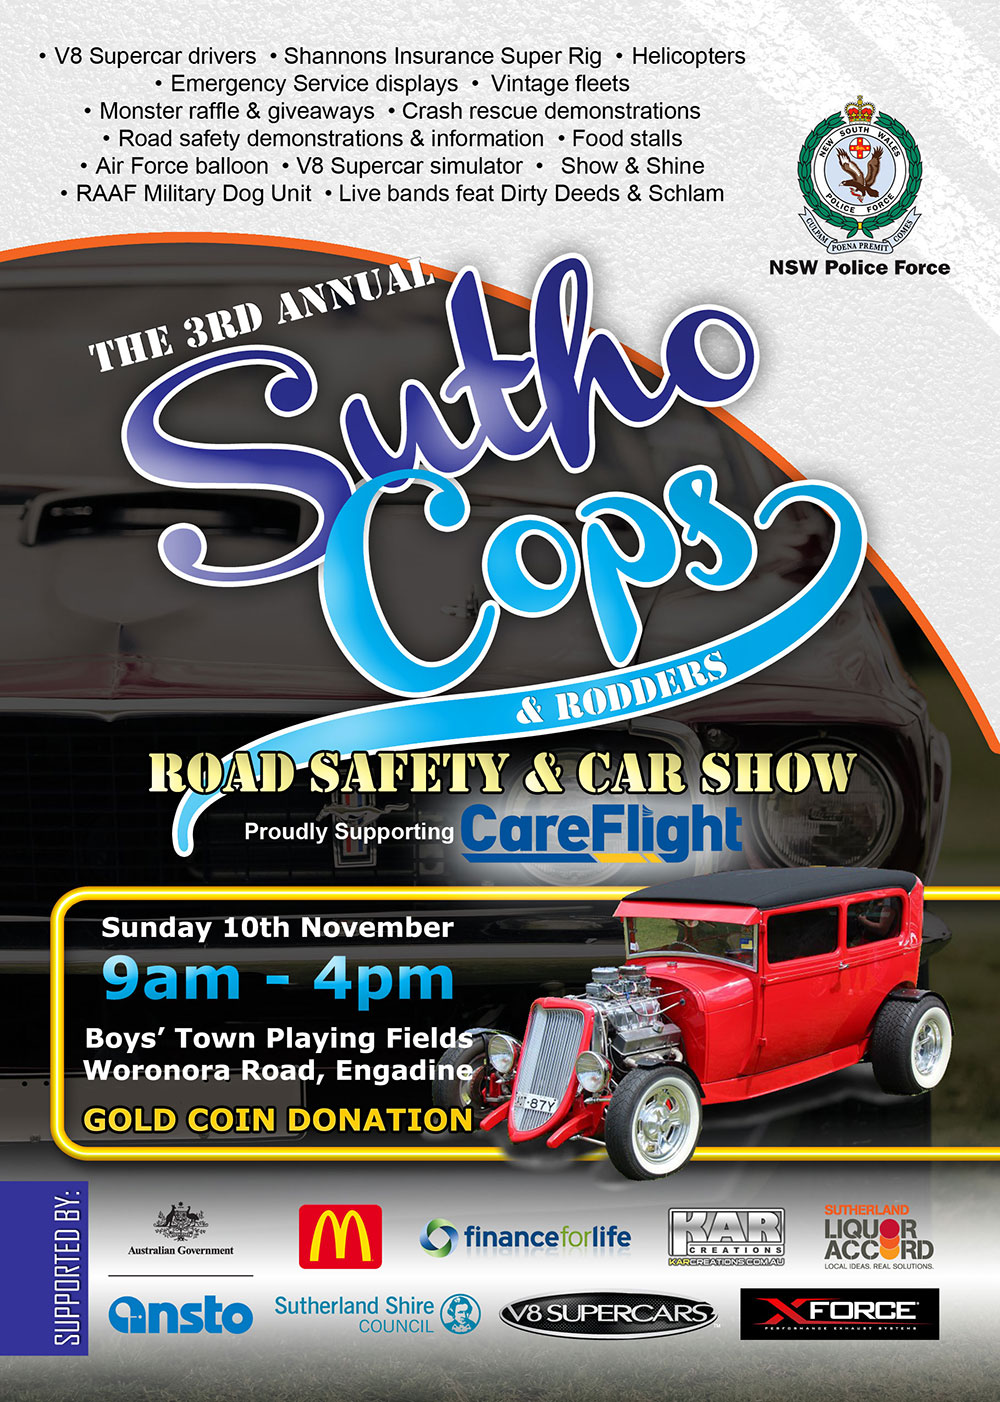 2013 Cops & Rodders Flyer